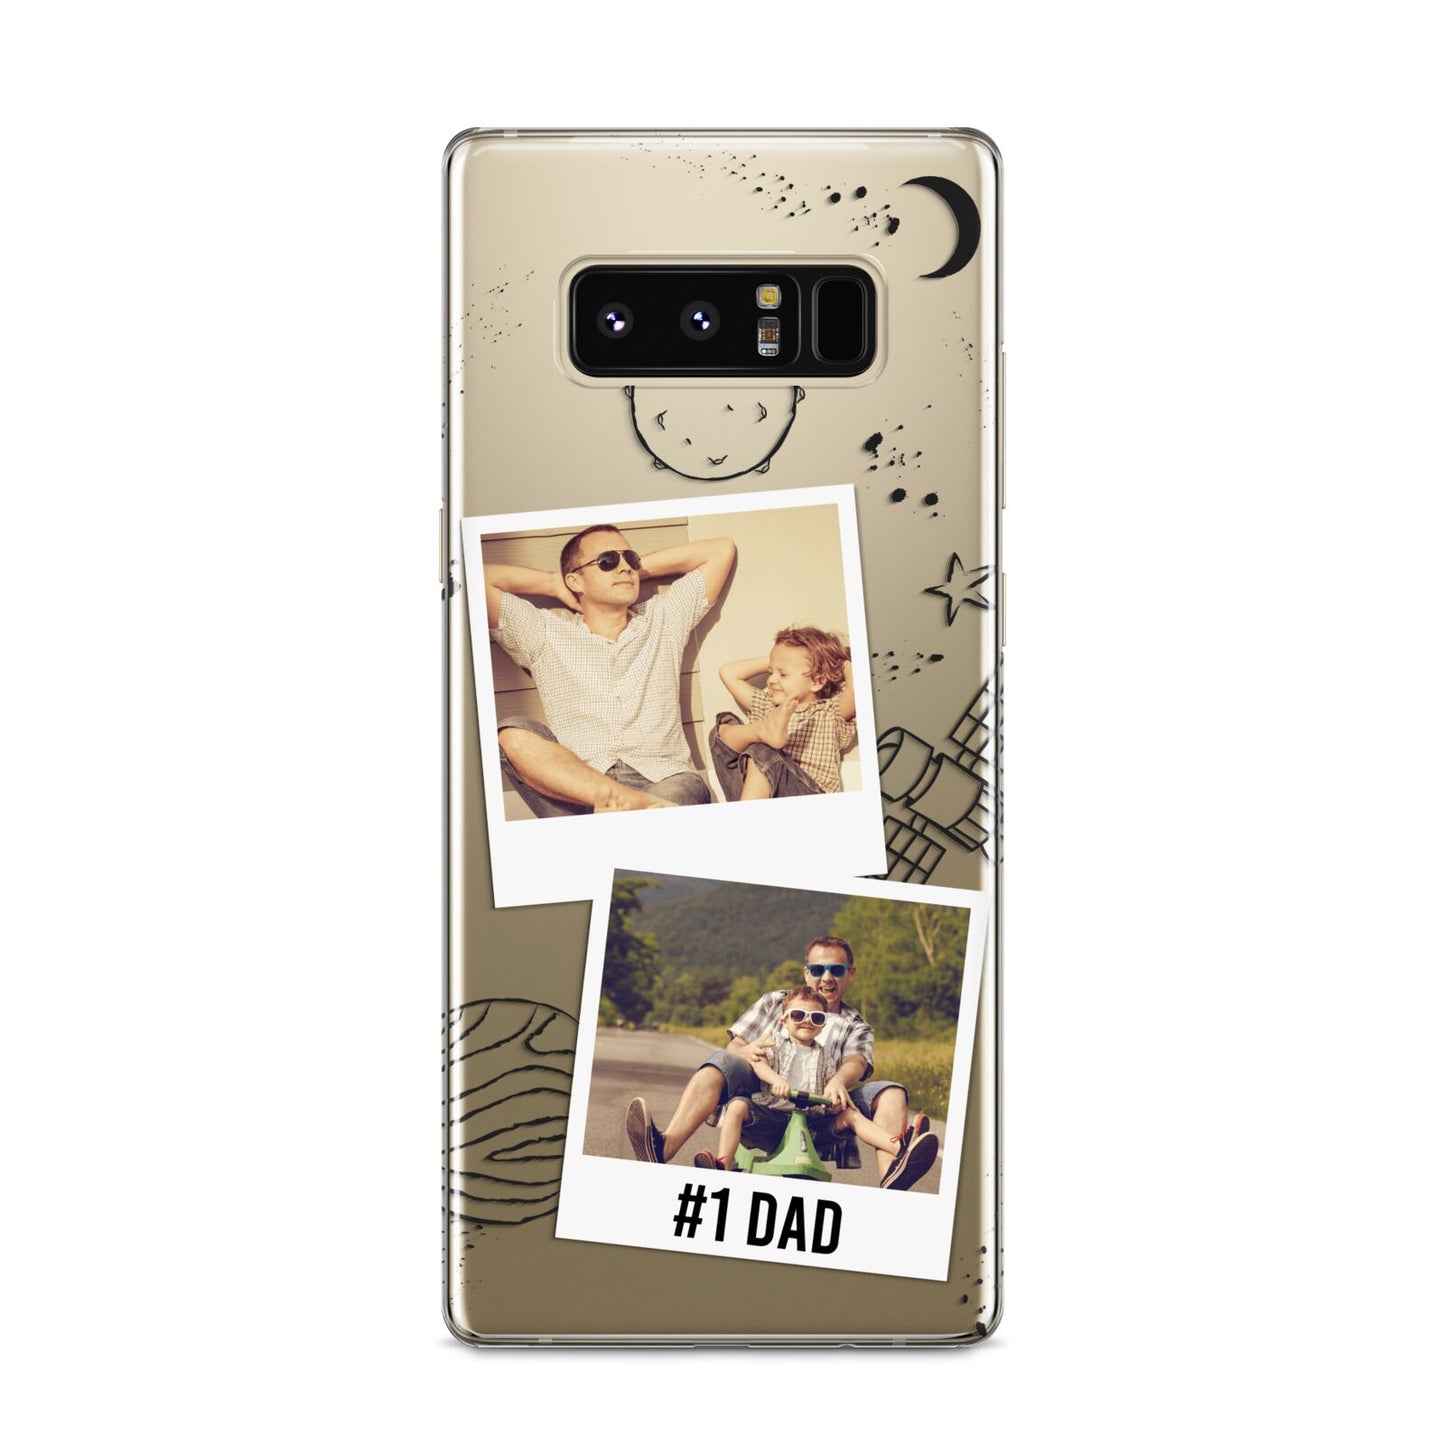 Personalised Dad Photos Samsung Galaxy S8 Case